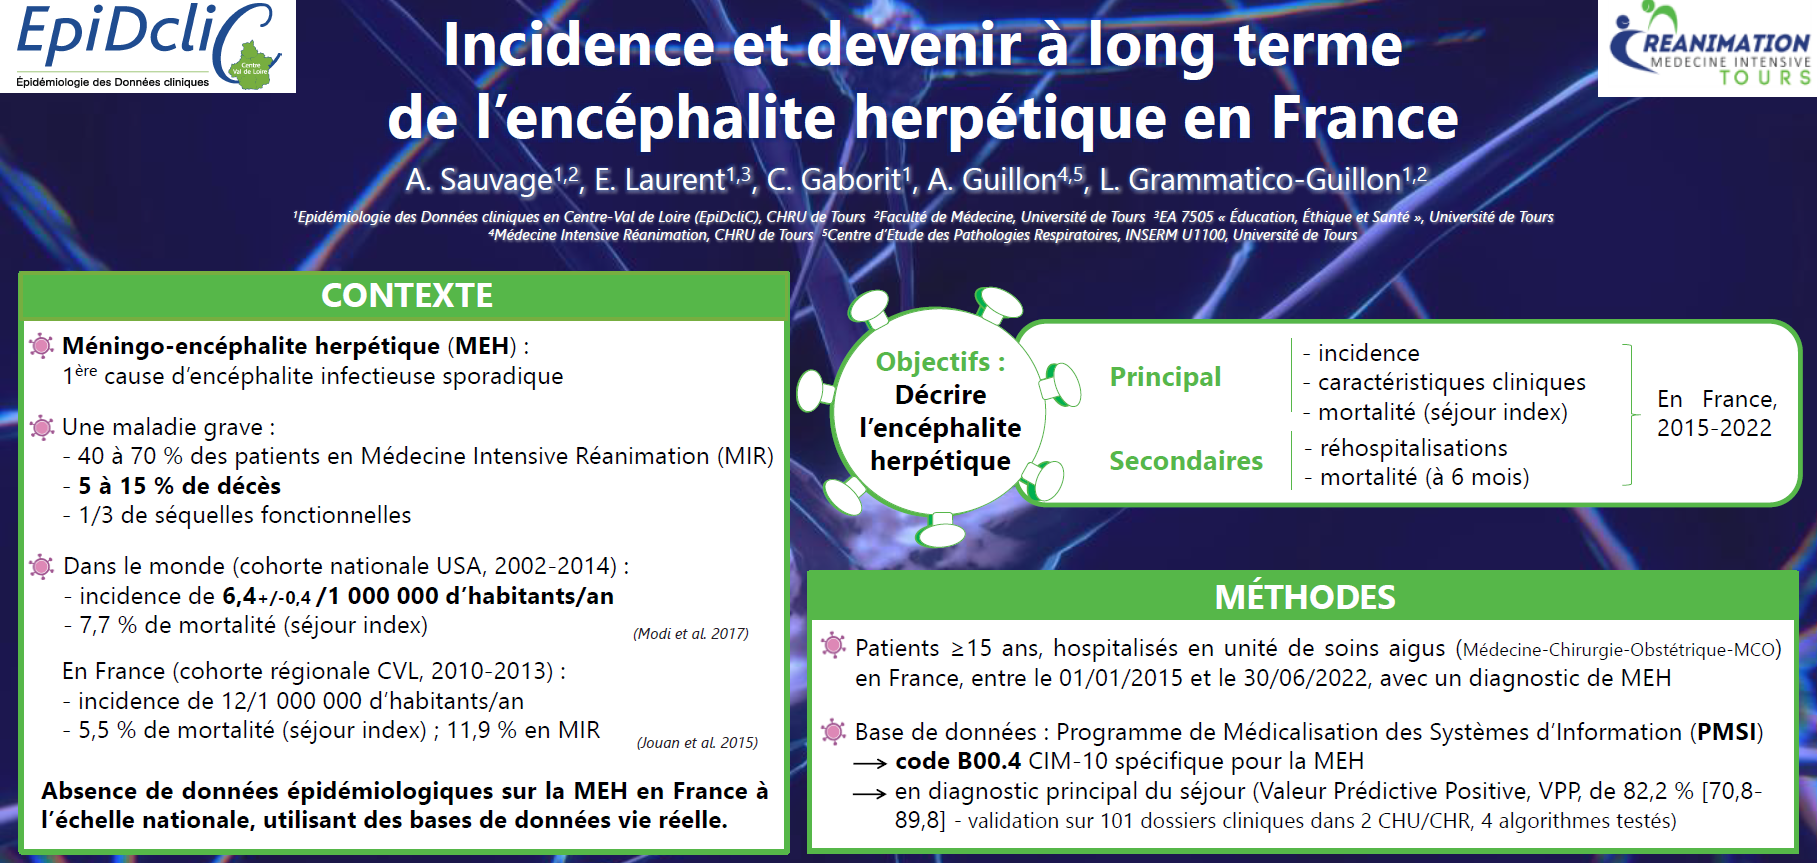 Incidence et devenir à long terme de l’encéphalite herpétique en France